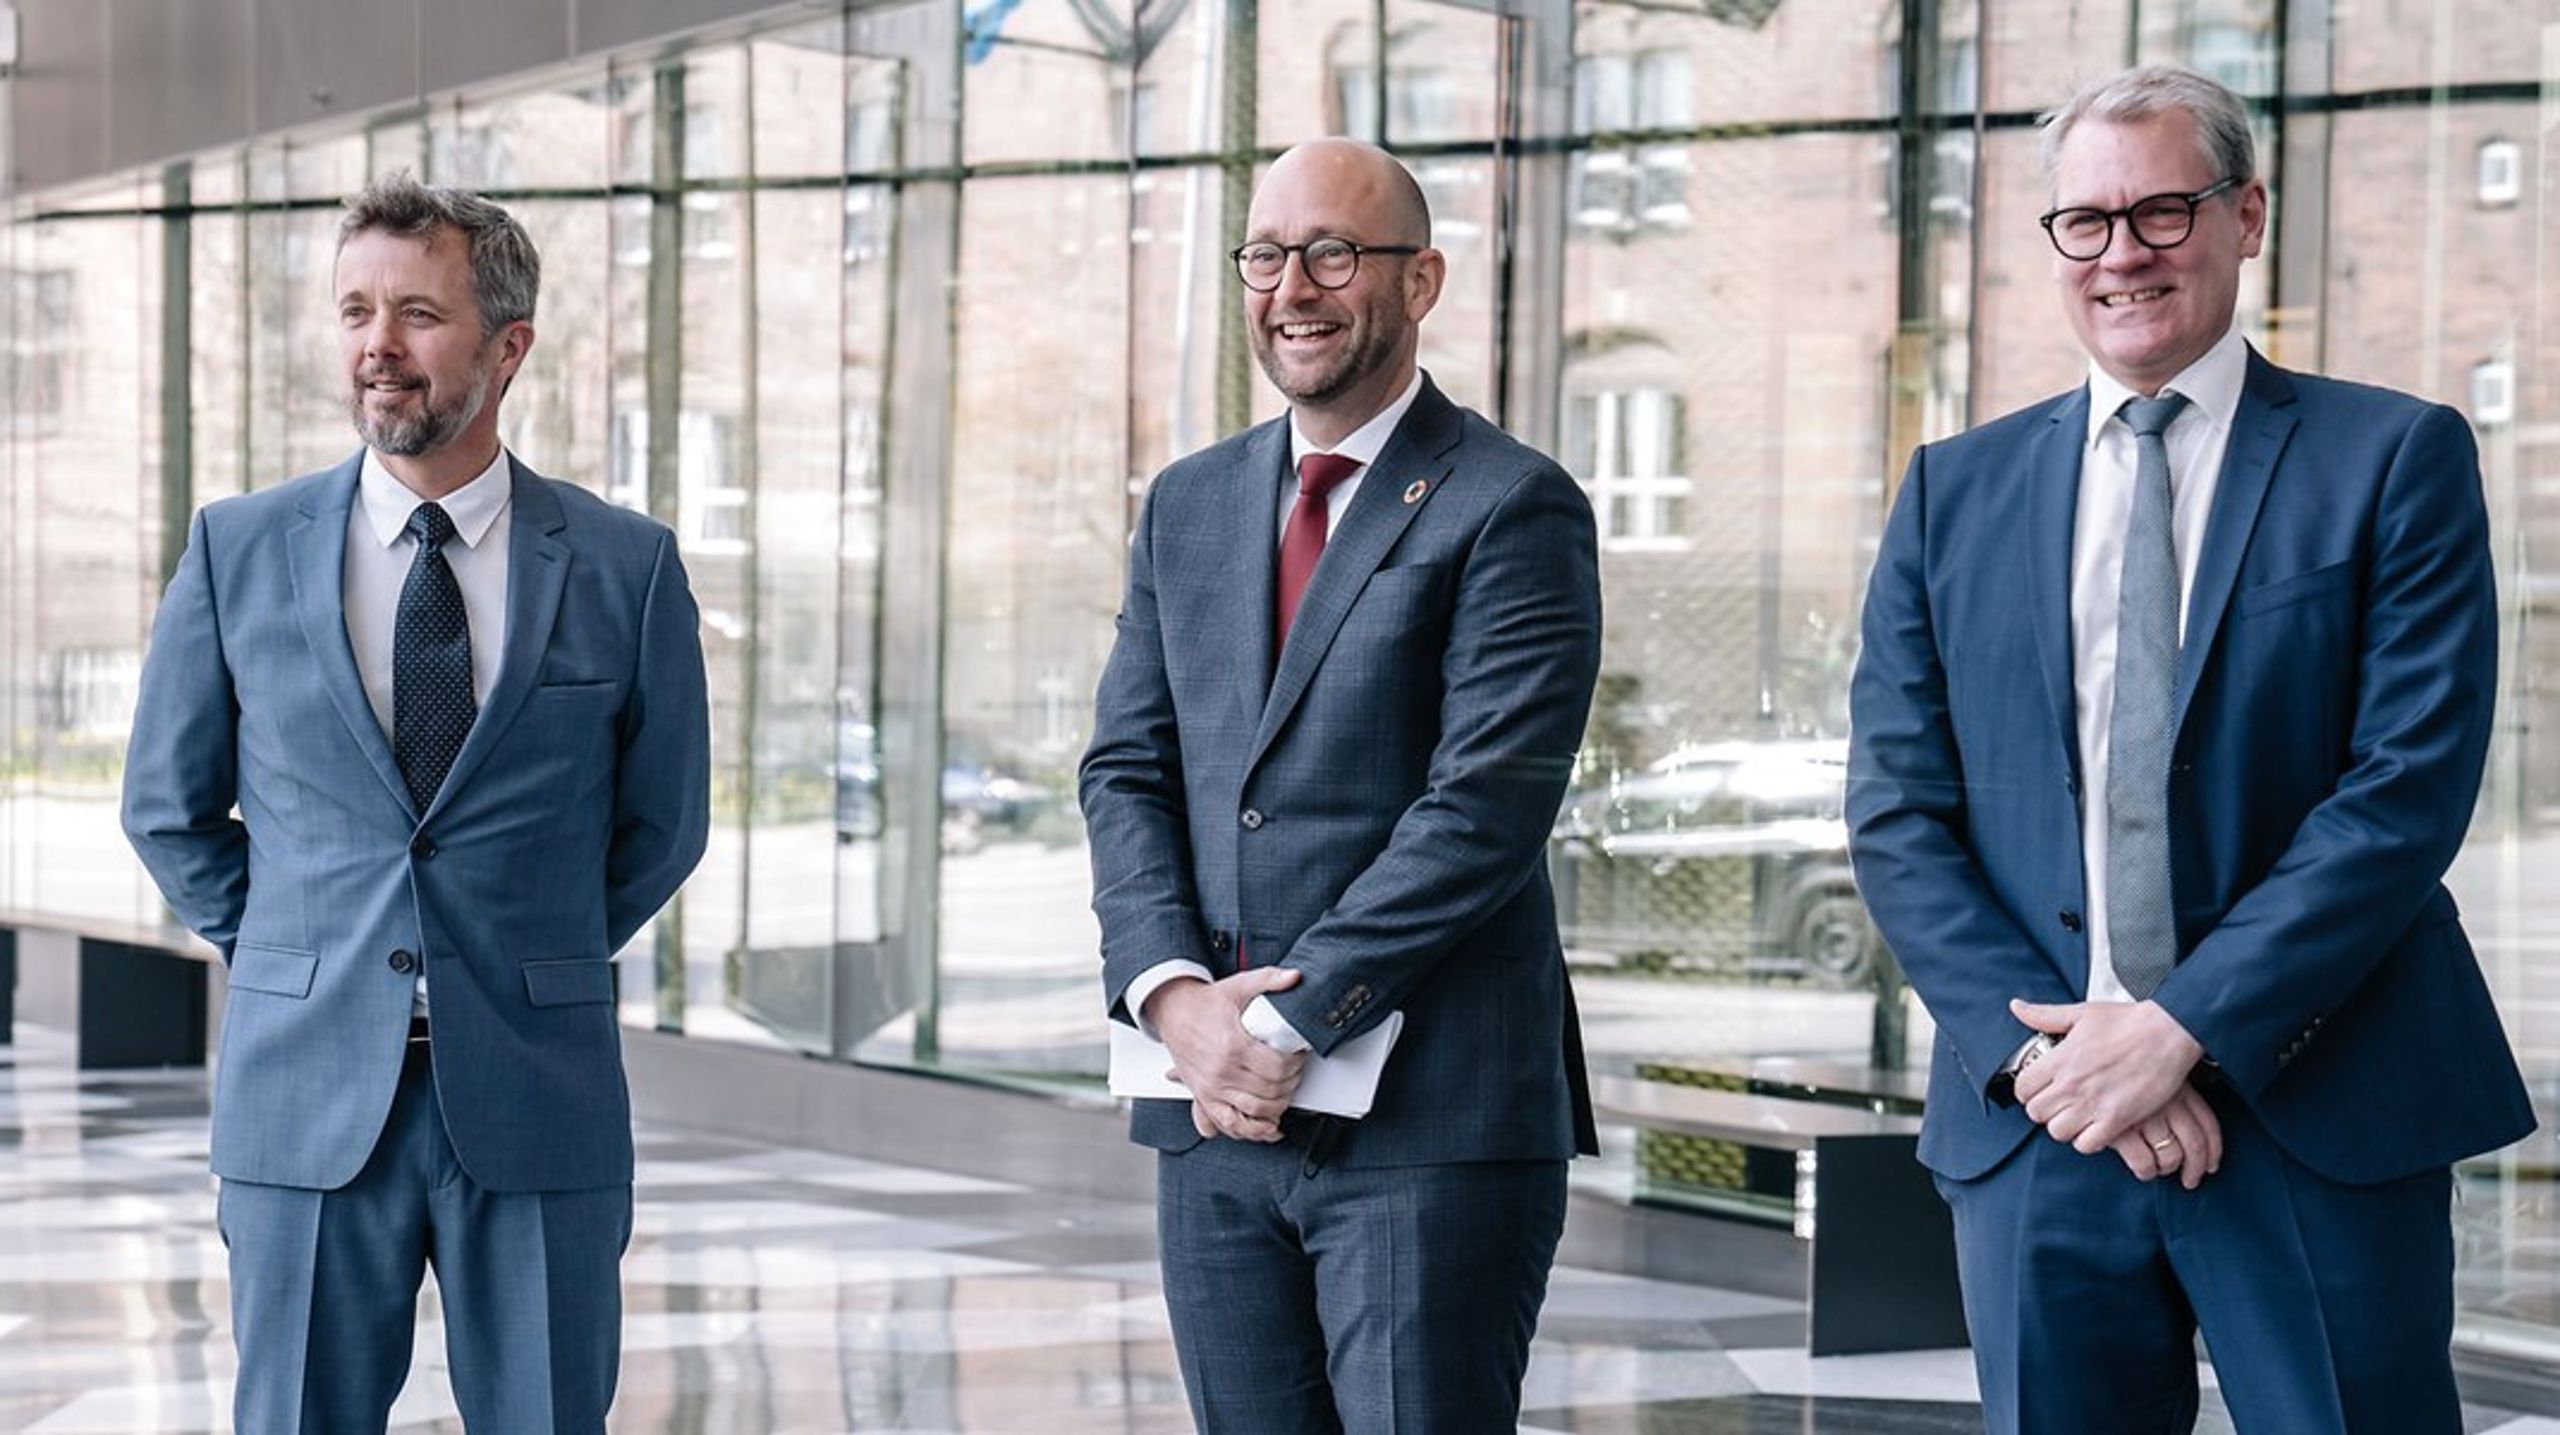 Fødevareminister Rasmus Prehn (S), Kronprins Frederik og direktør for Dansk Industri Thomas Bustrup var blandt værterne til World Food Summit, der blev afholdt i København i starten af maj.